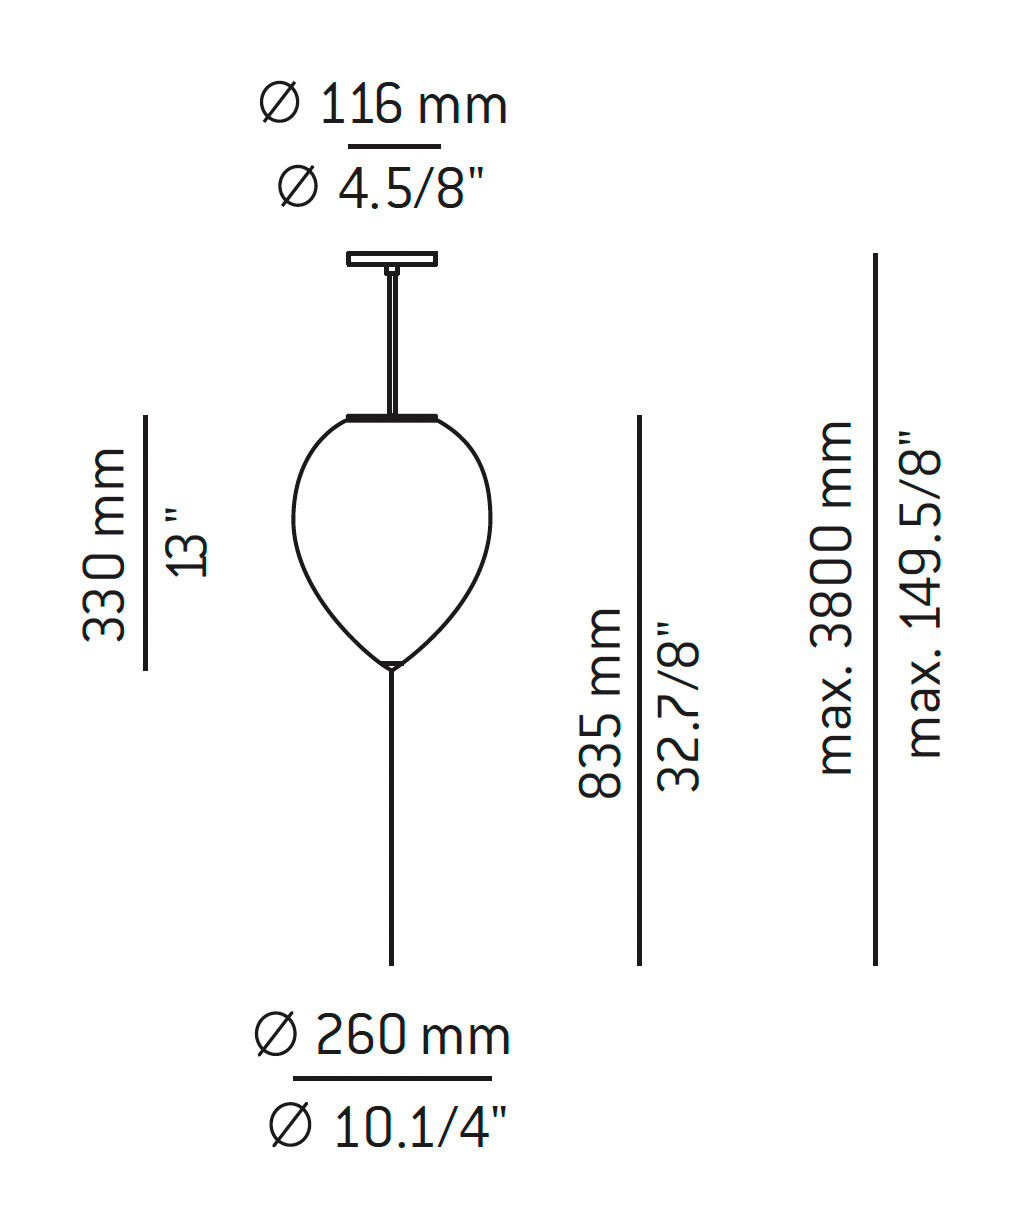 Medidas Balloon modelo T-3055S de suspensión de Estiluz